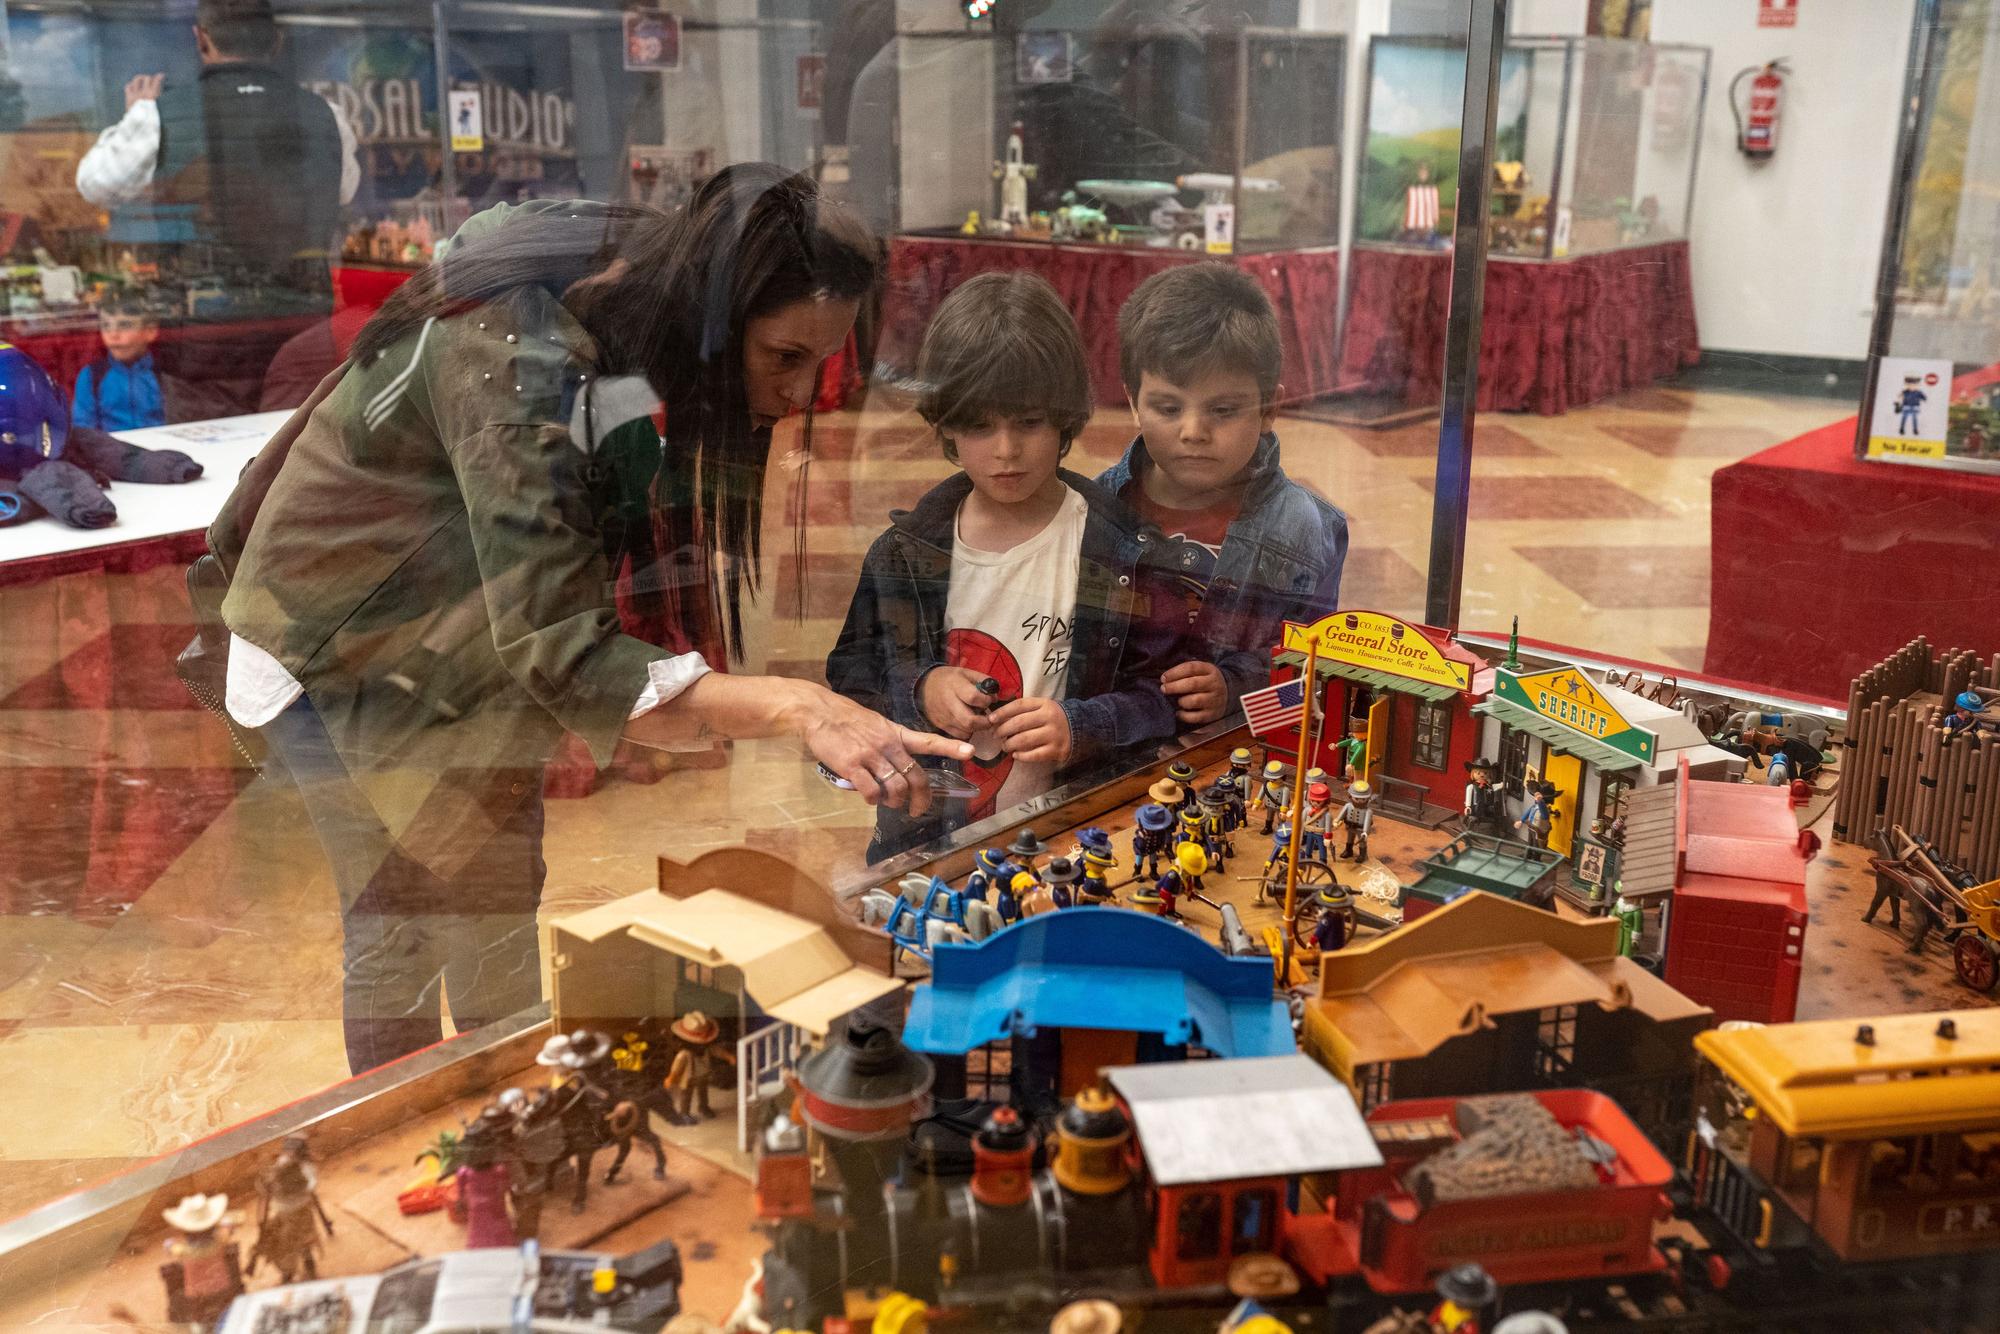 GALERÍA | La curiosa exposición de Playmobil en el Hotel Alda